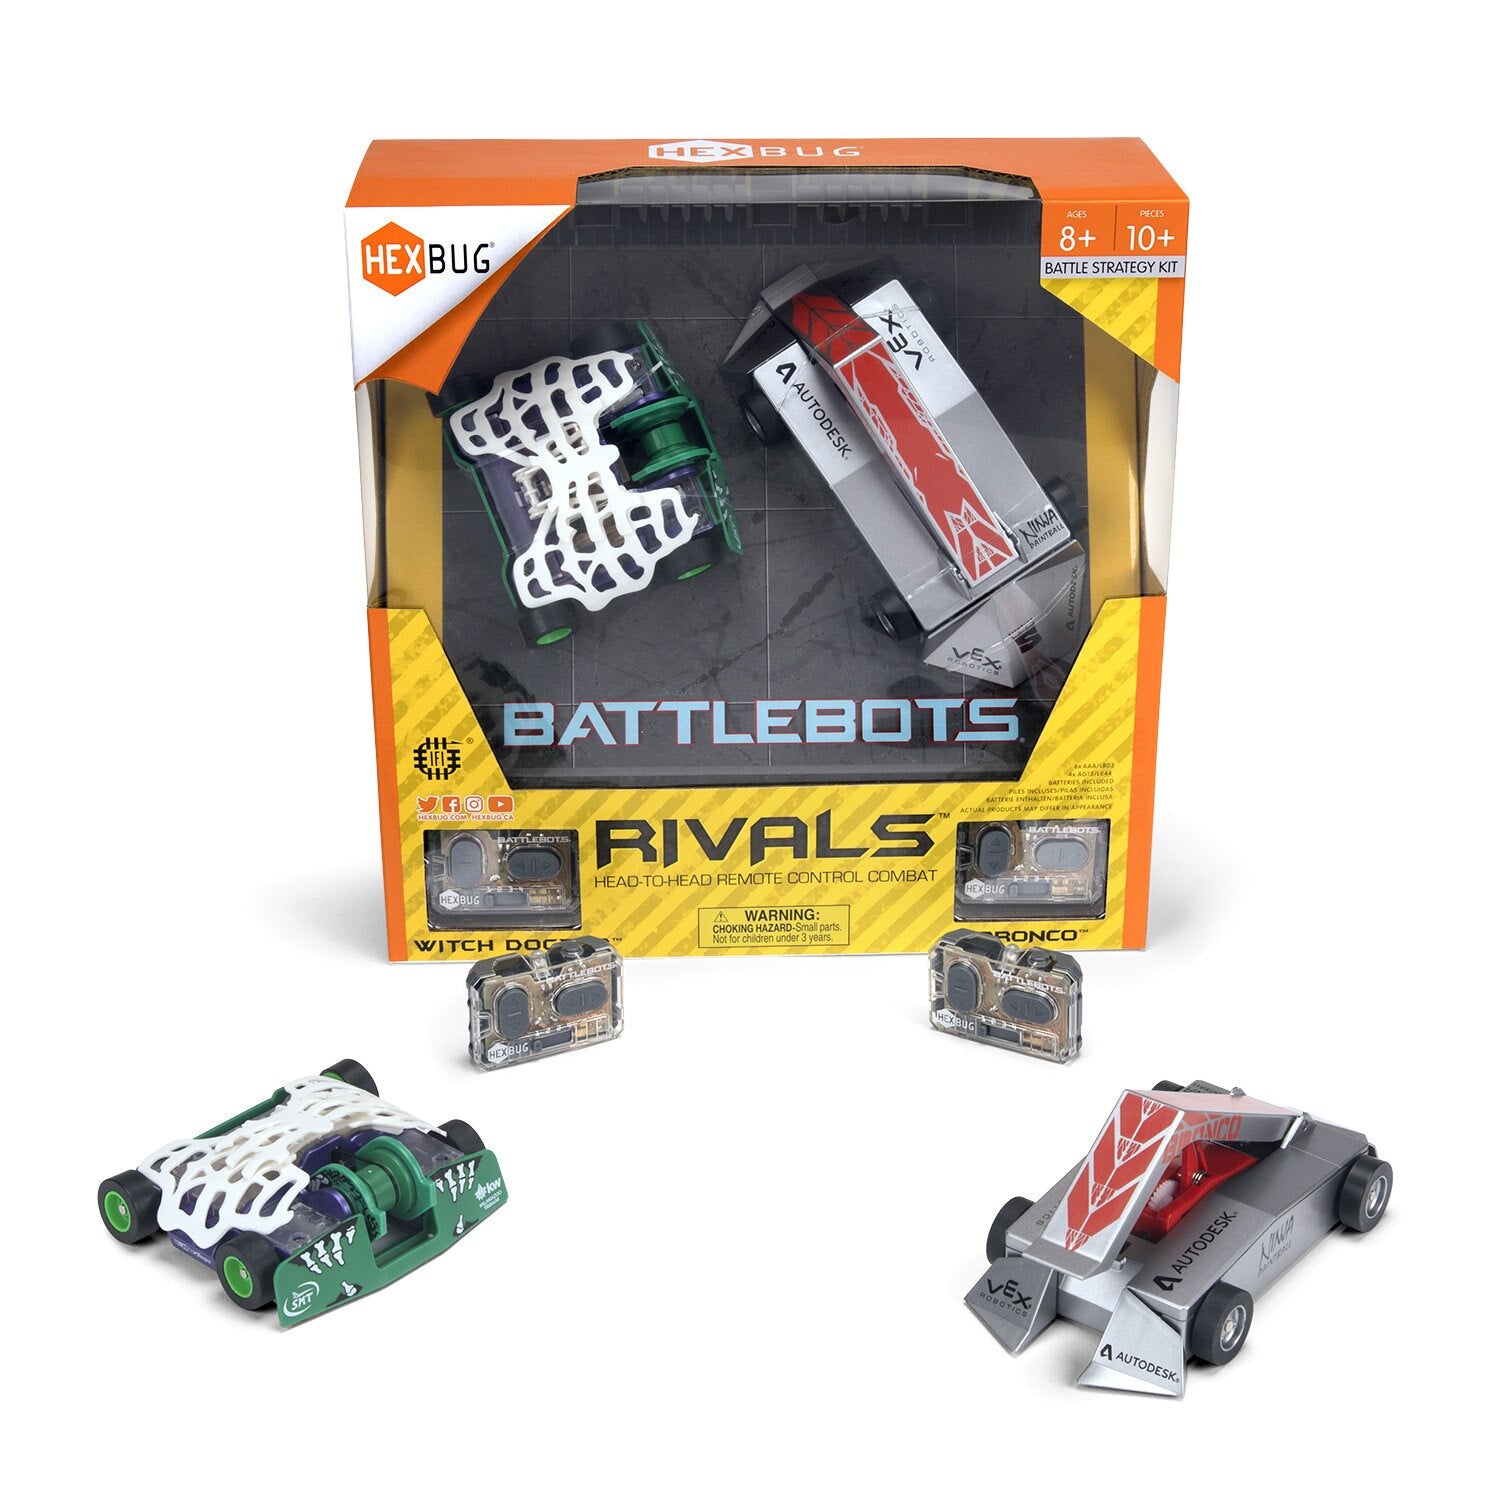 GT4229 Robot Battlebots Pk2